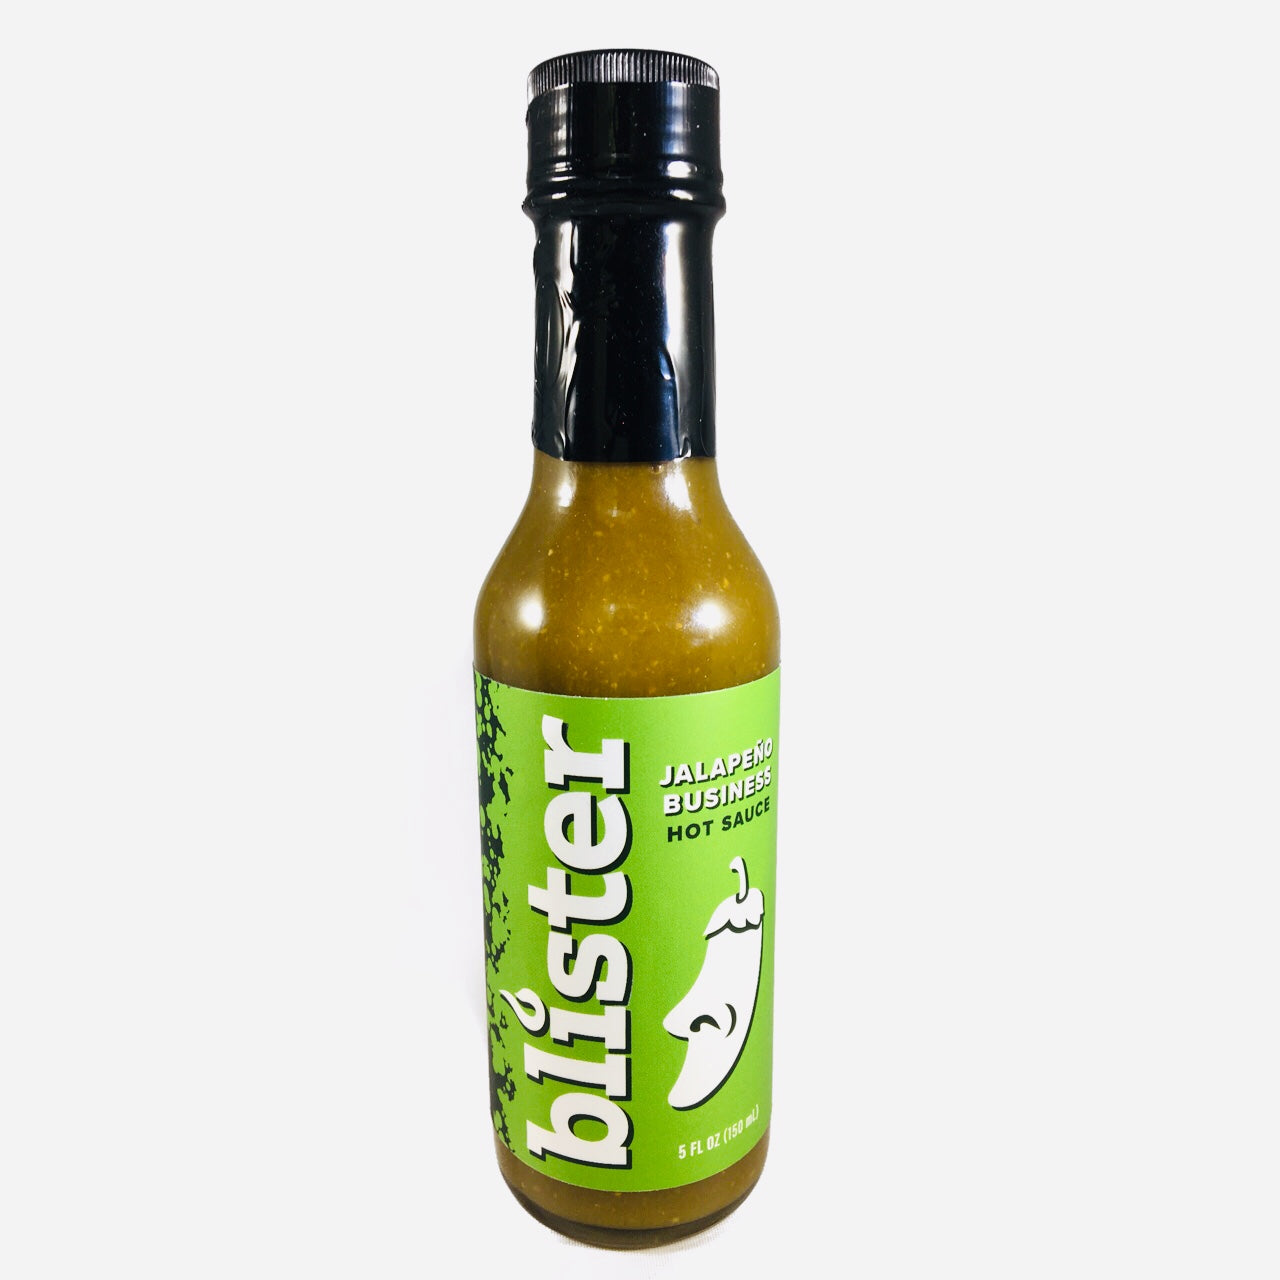 Blister Jalapeño Business Hot Sauce